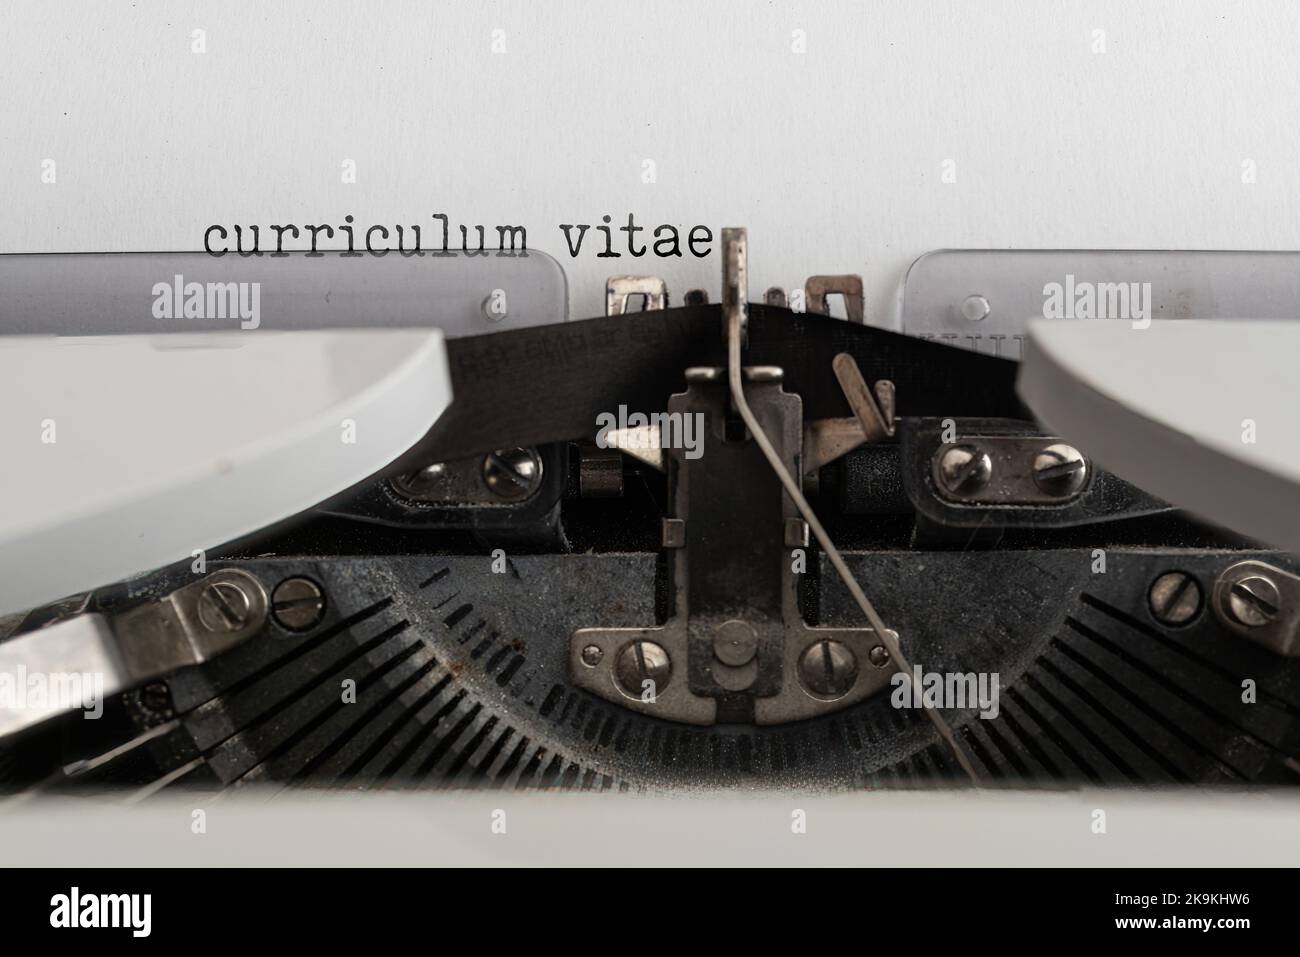 Gros plan des mots CURRICULUM VITAE écrit sur une vieille machine à écrire mécanique Banque D'Images